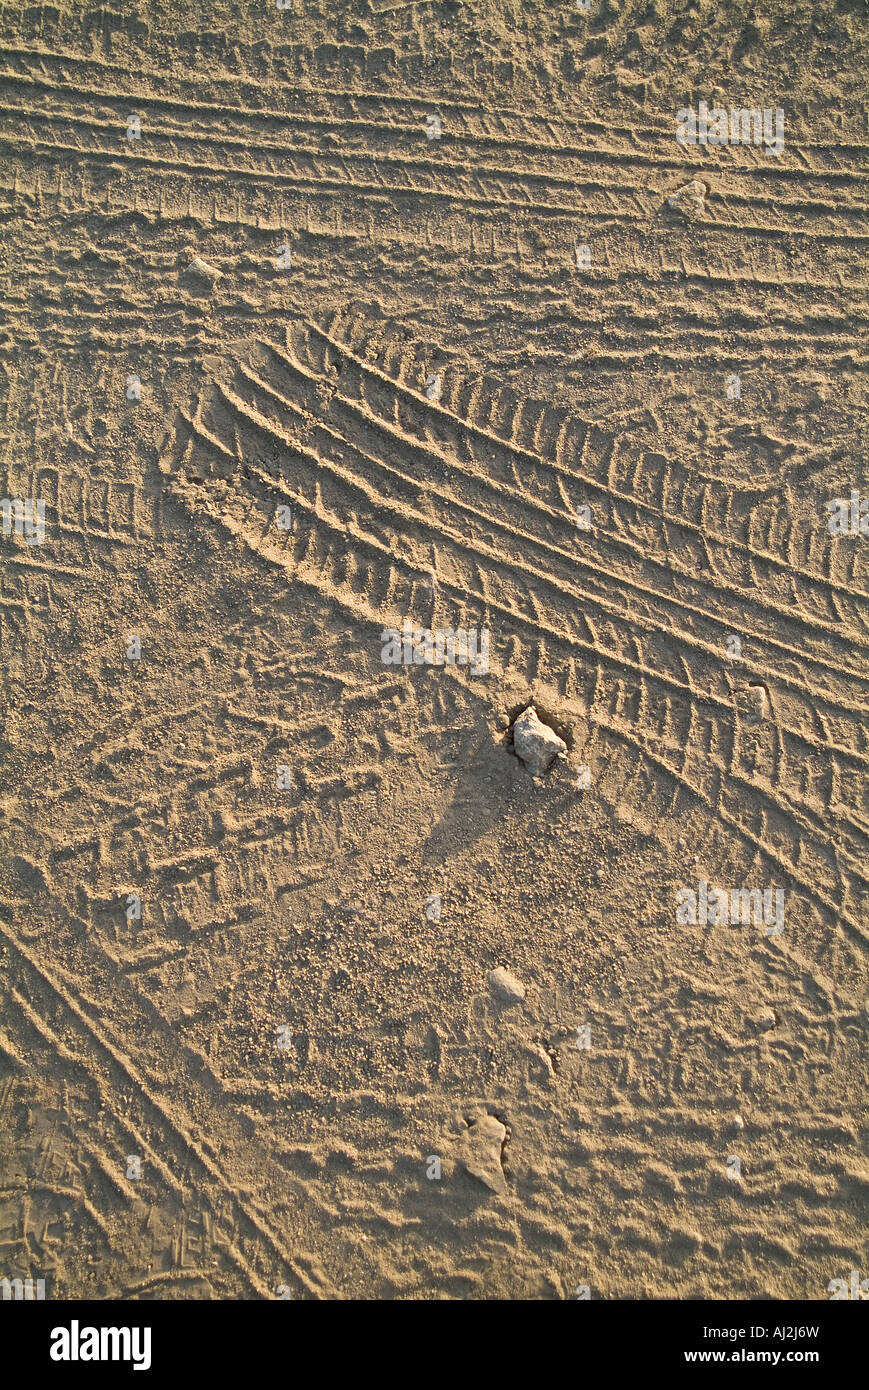 Les traces de pneus dans le sable Détails Route de terre Banque D'Images